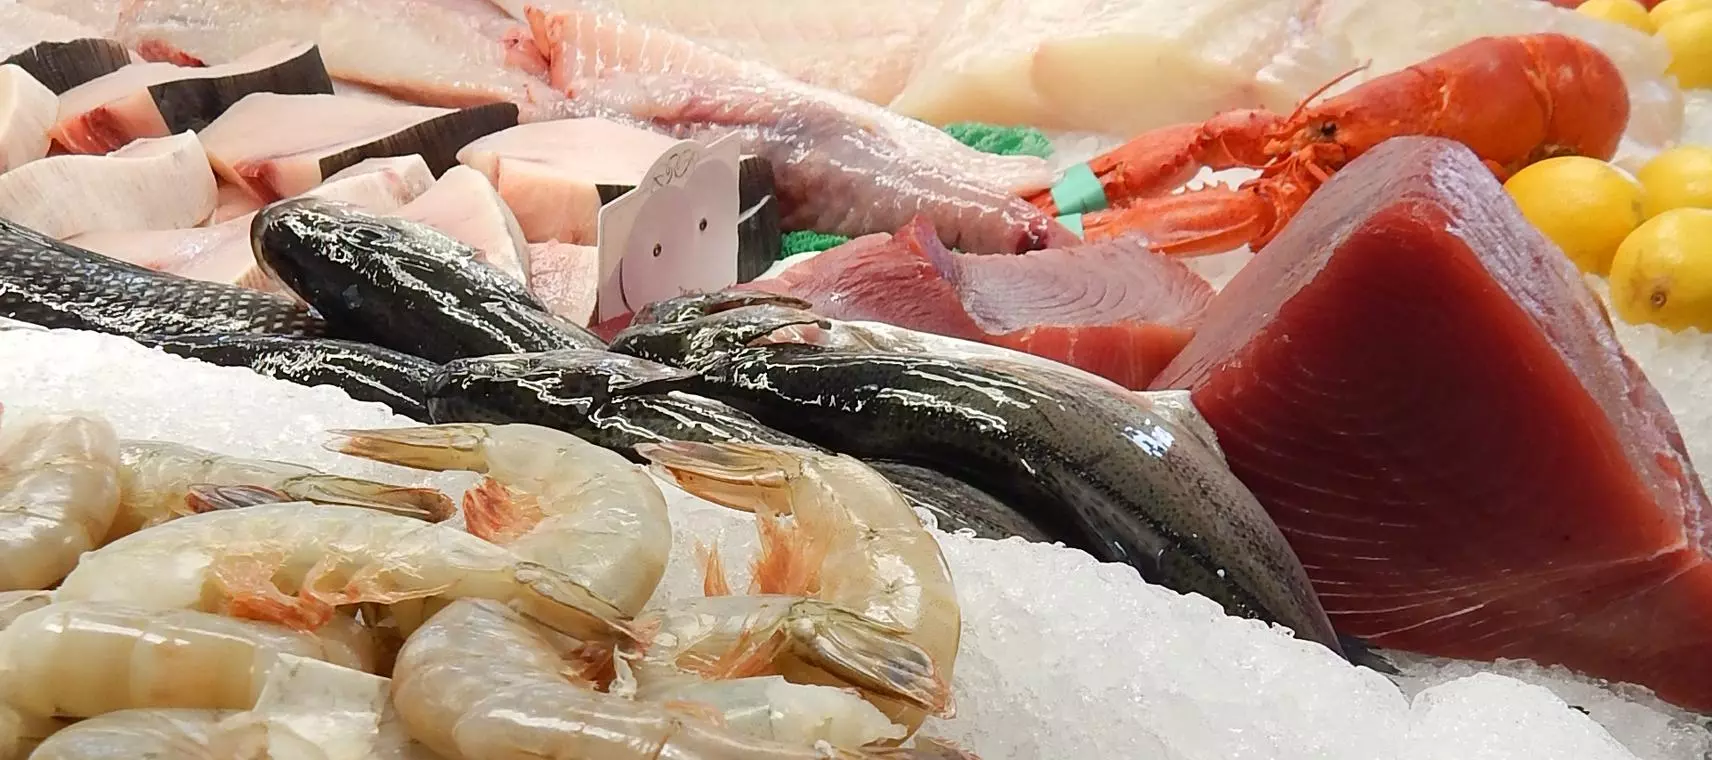 der Markt für Fisch- und Meeresfrüchteerzeugnisse